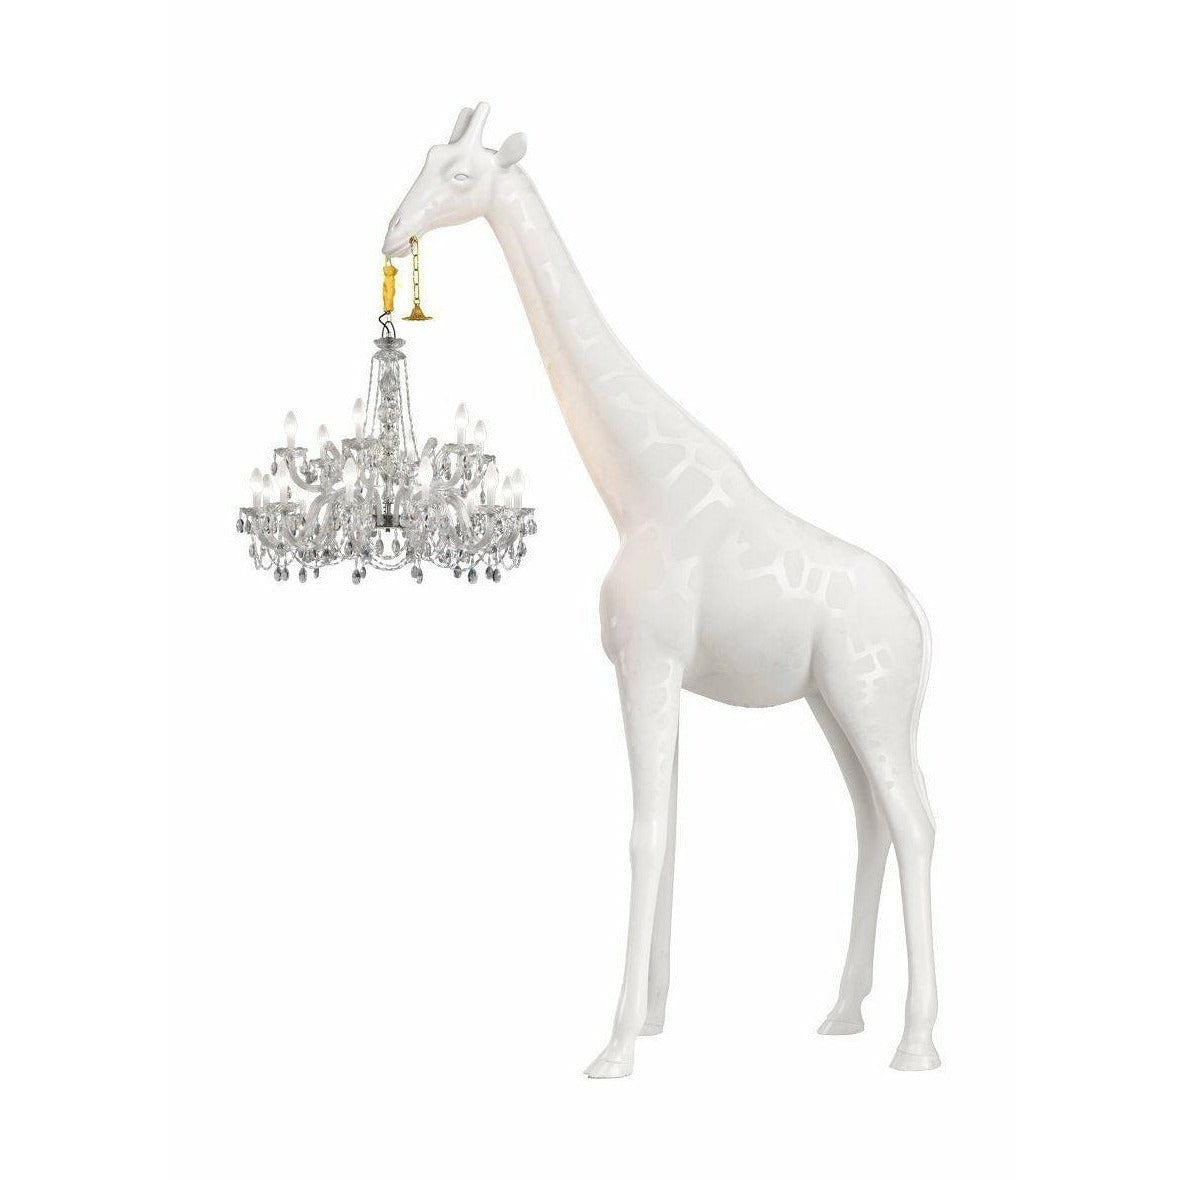 Jeeboo jirafa enamorada lámpara de pie al aire libre h 4m, blanco